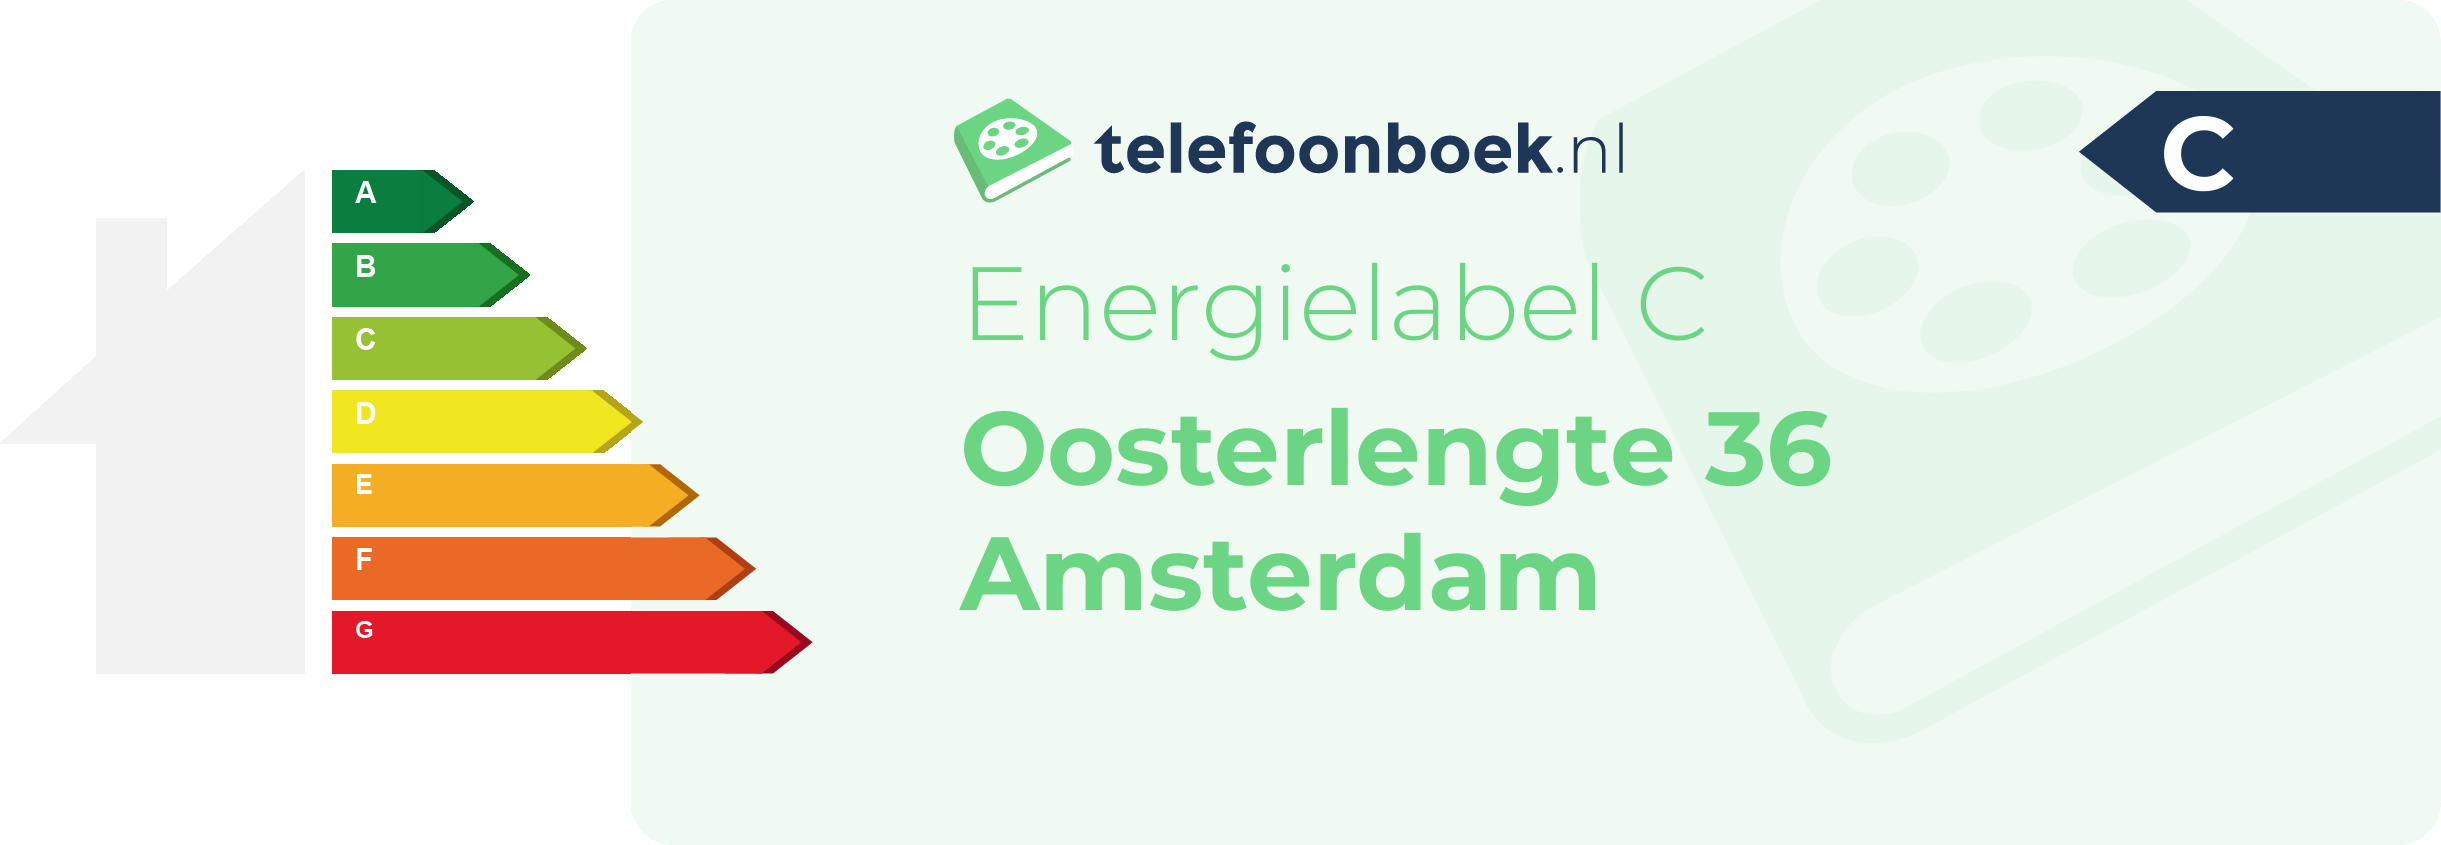 Energielabel Oosterlengte 36 Amsterdam